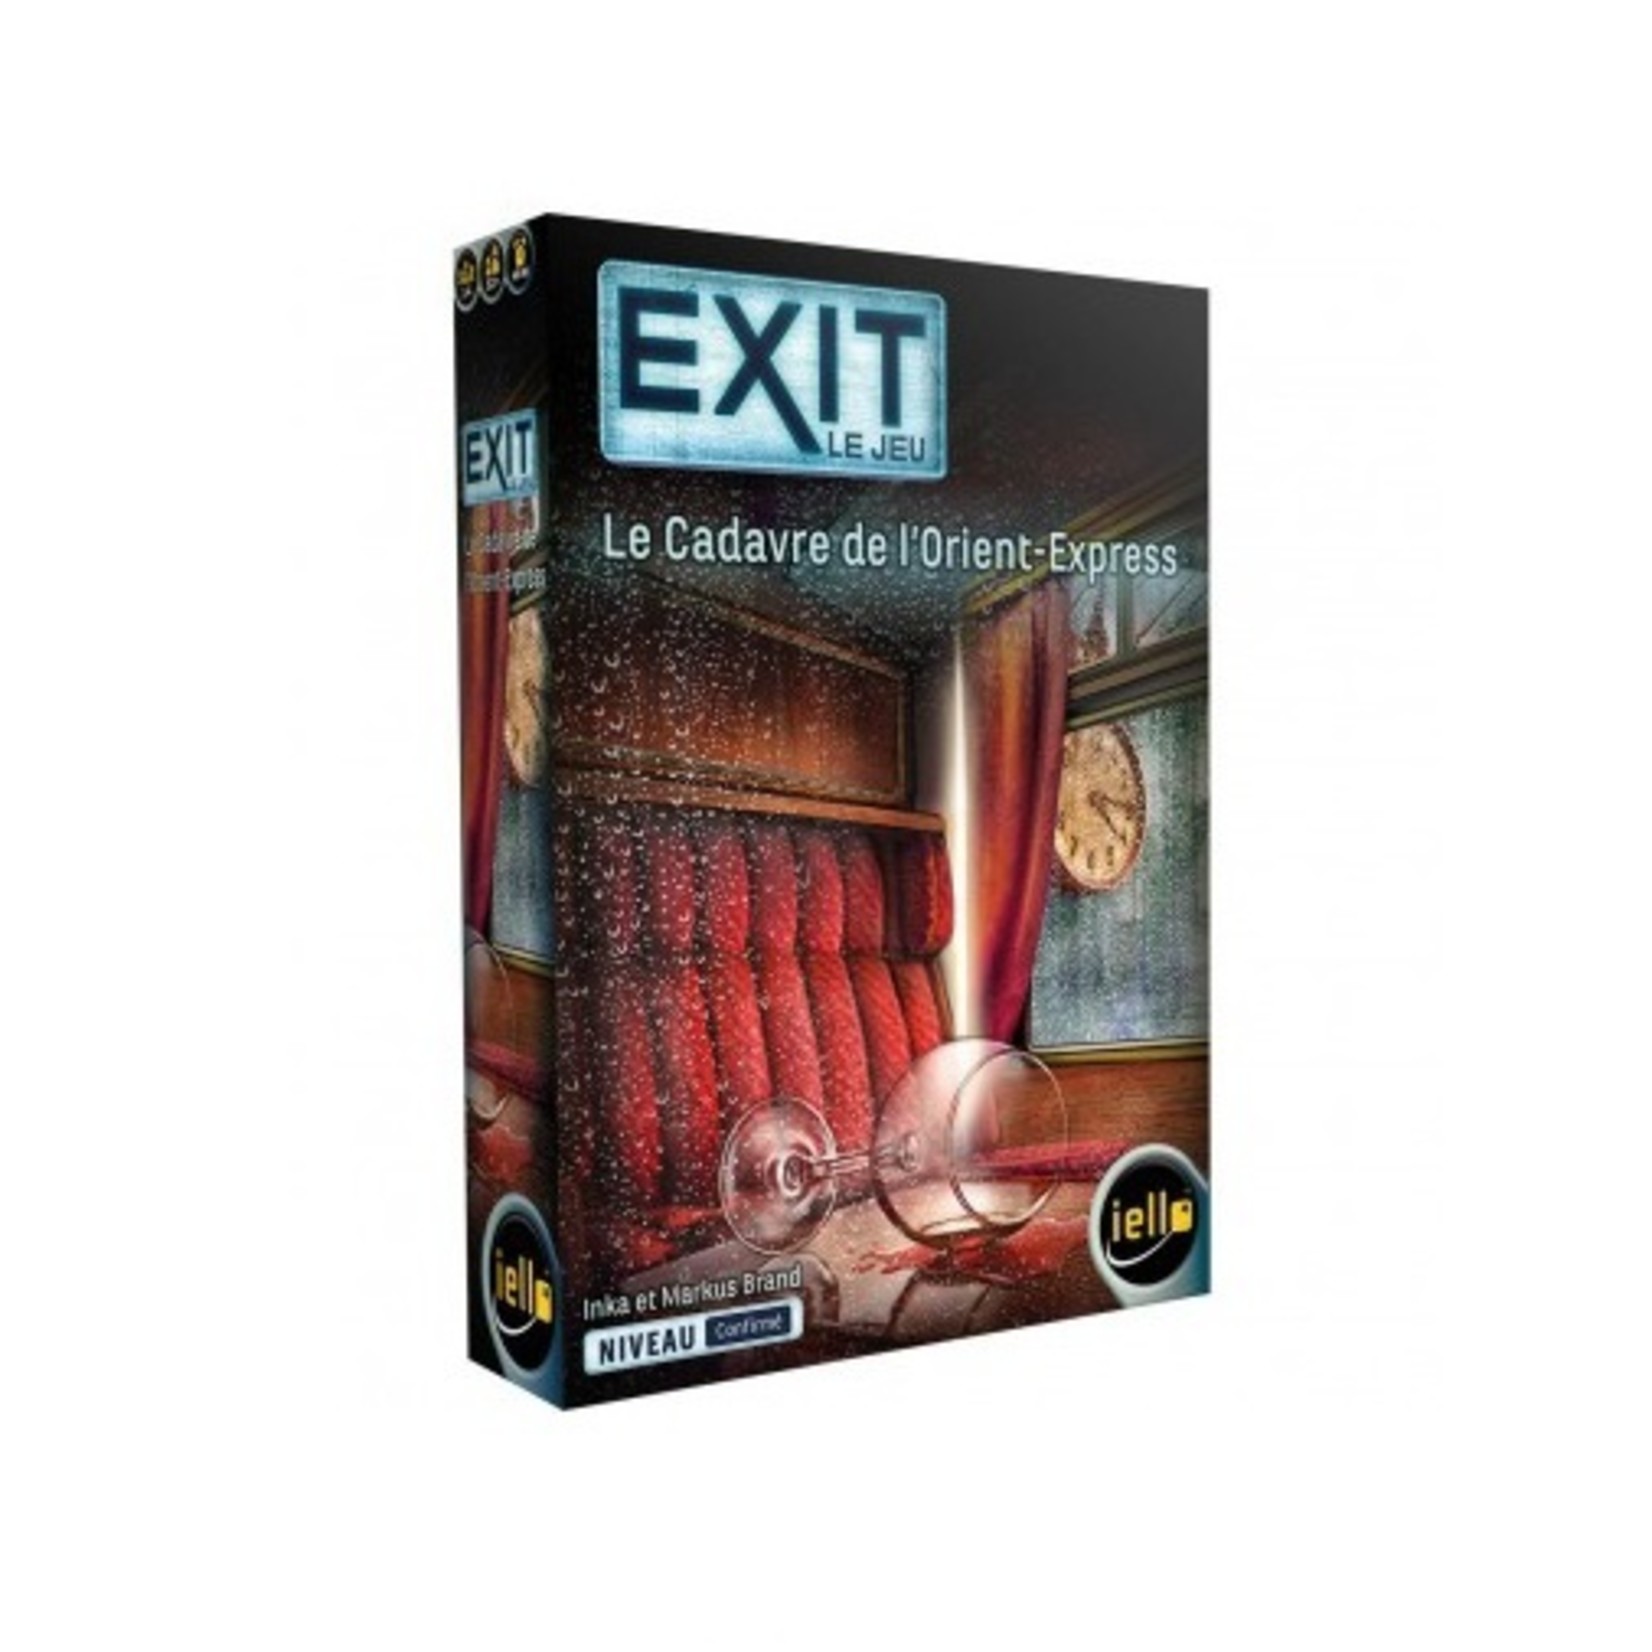 Iello Exit le jeu - Le cadavre de l'Orient Express